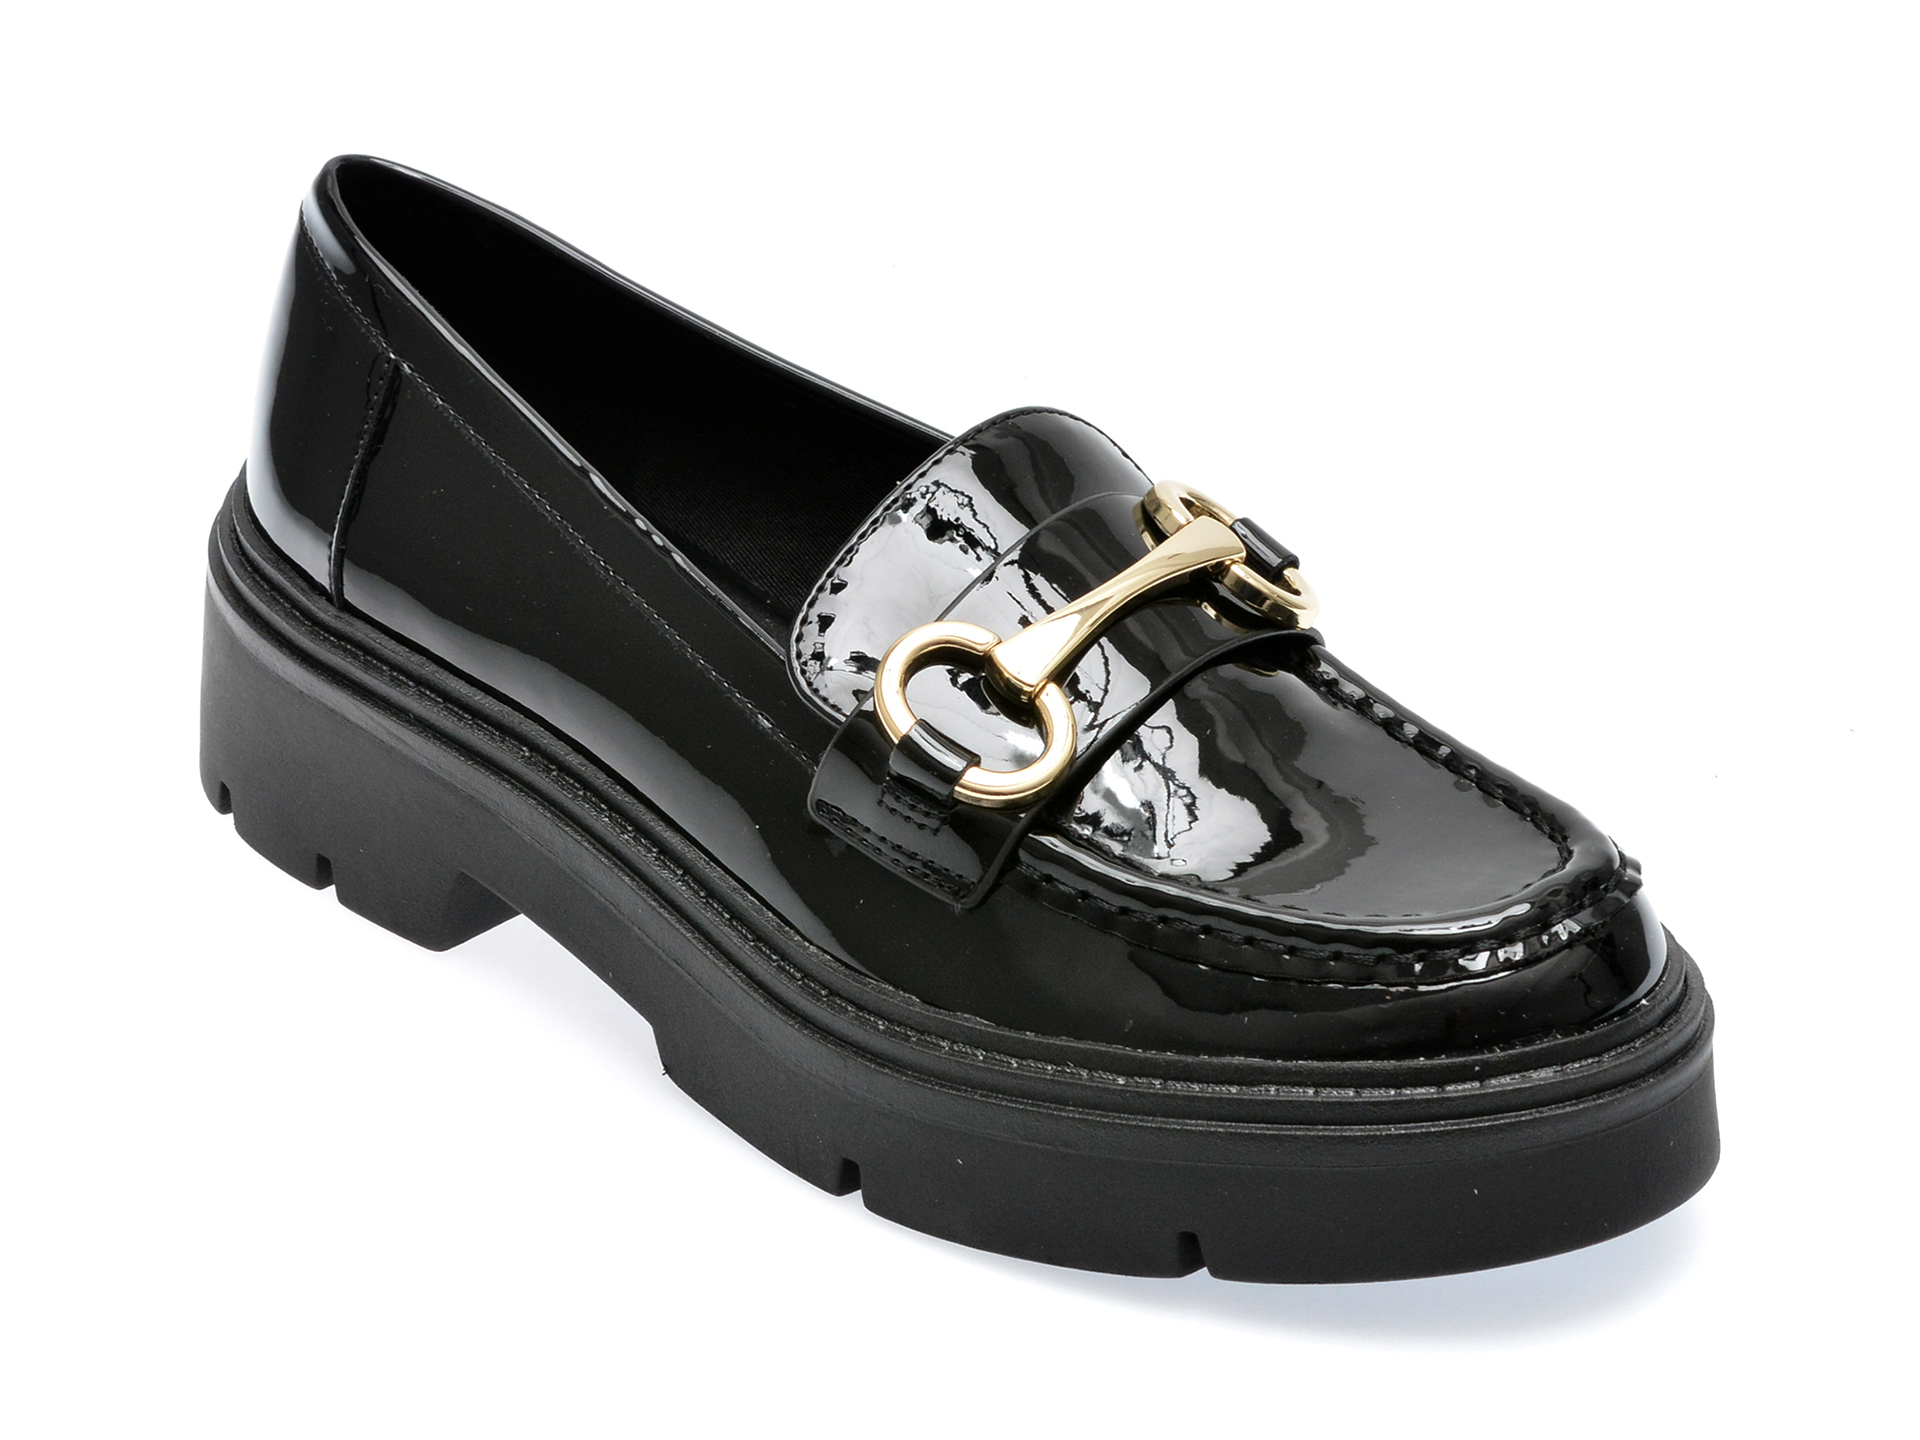 Pantofi ALDO negri, MISKA001, din piele ecologica